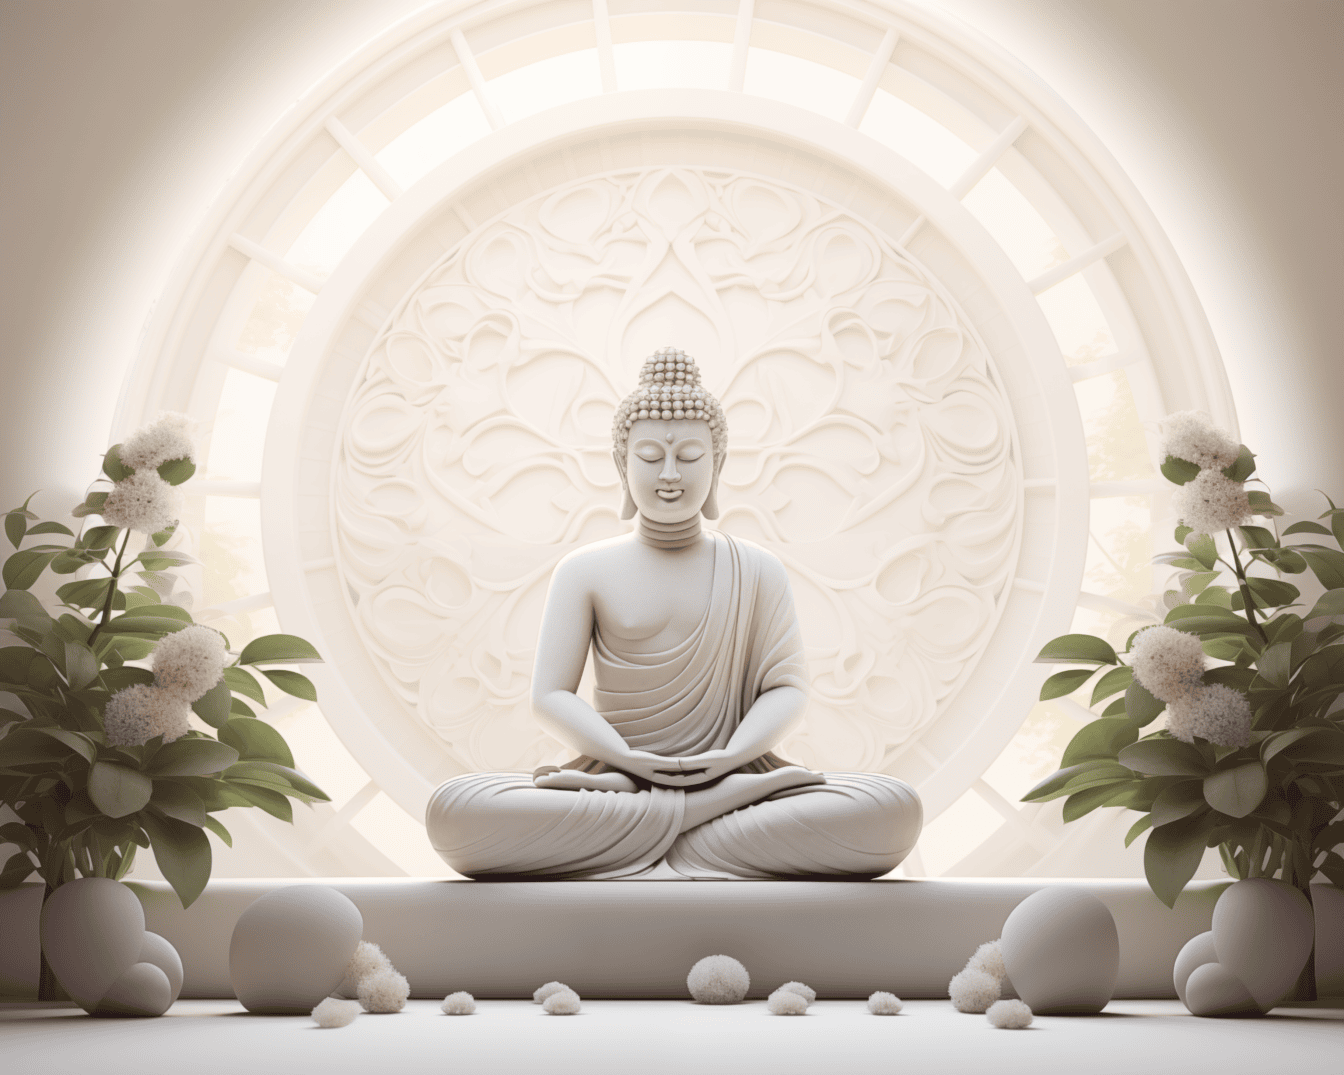 Storslått hvit statue av en Buddha som sitter i lotusstilling og mediterer ved siden av hvite blomster